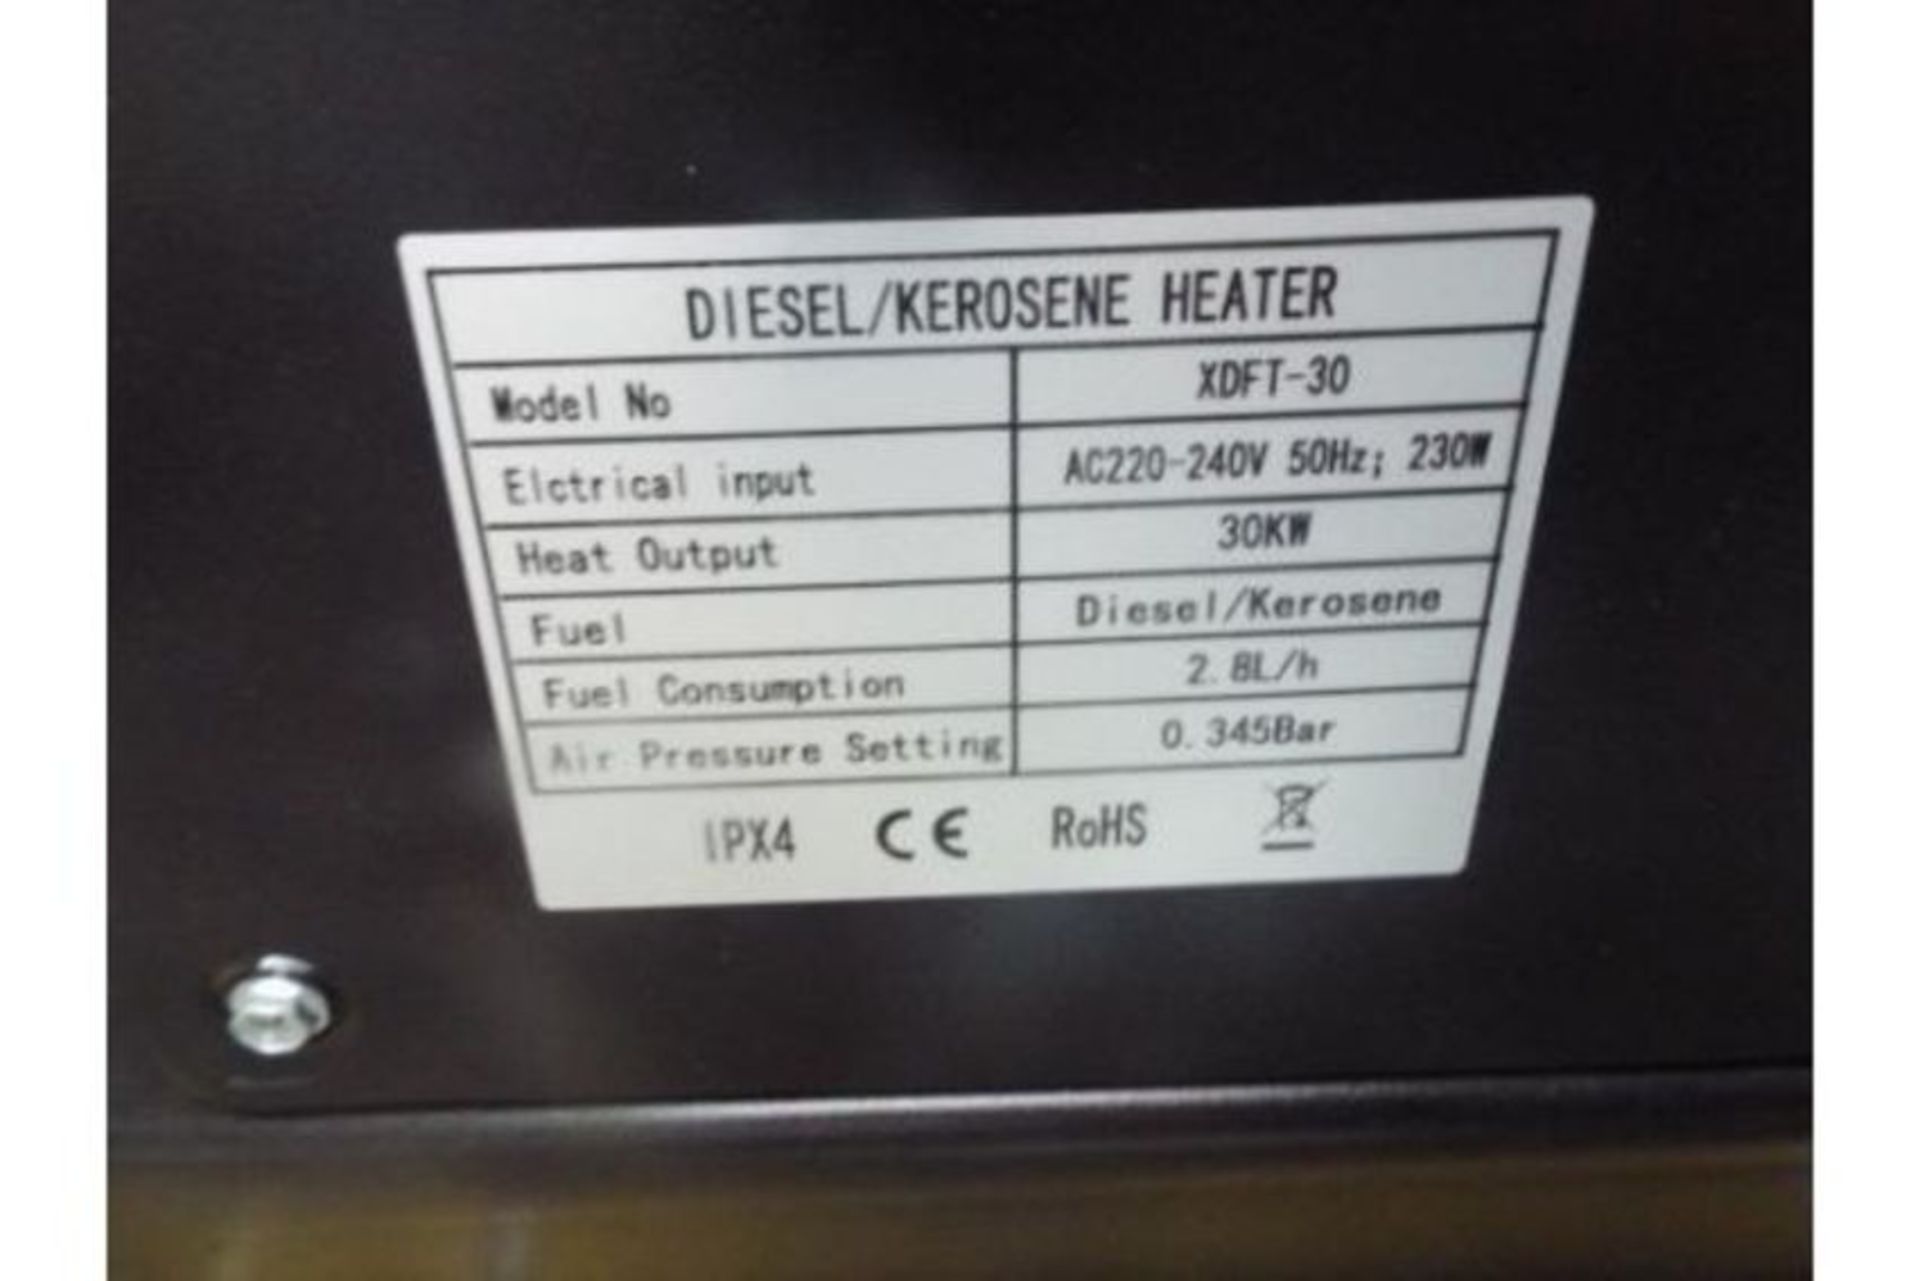 ** BRAND NEW ** XDFT-50 Diesel Space Heater - Image 7 of 9